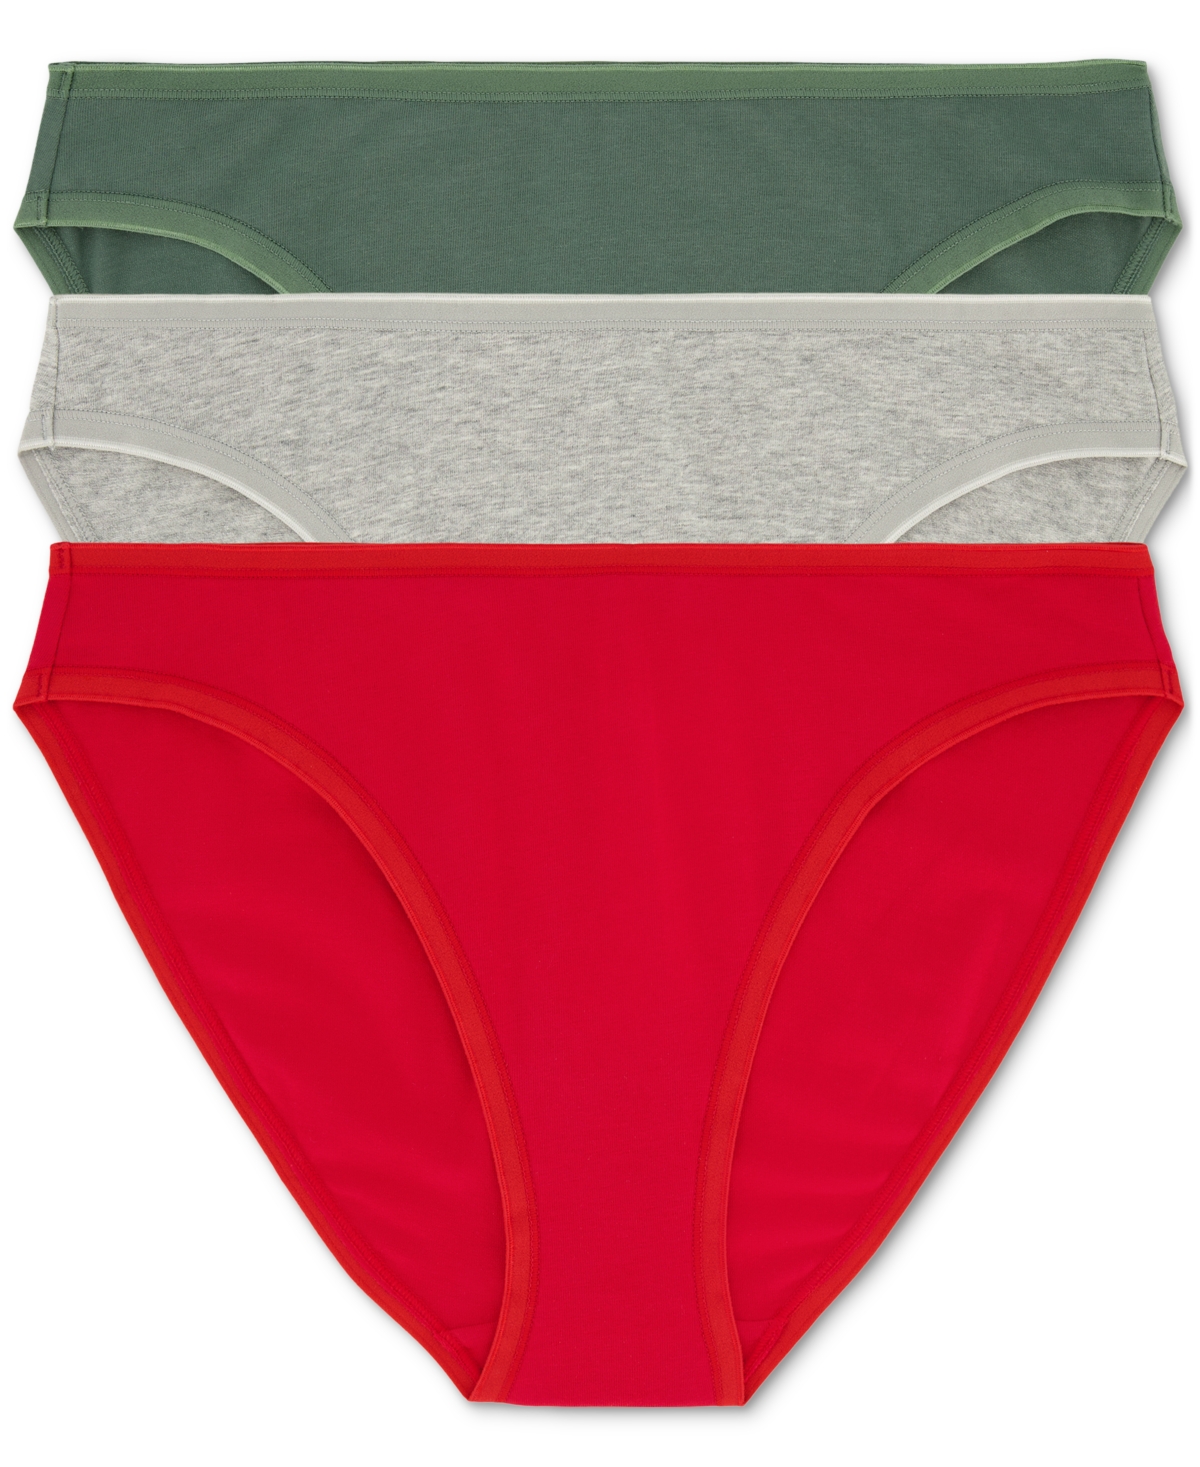 Gap Body Women's 3-pk Bikini Underwear Gpw00274 In Modern Red